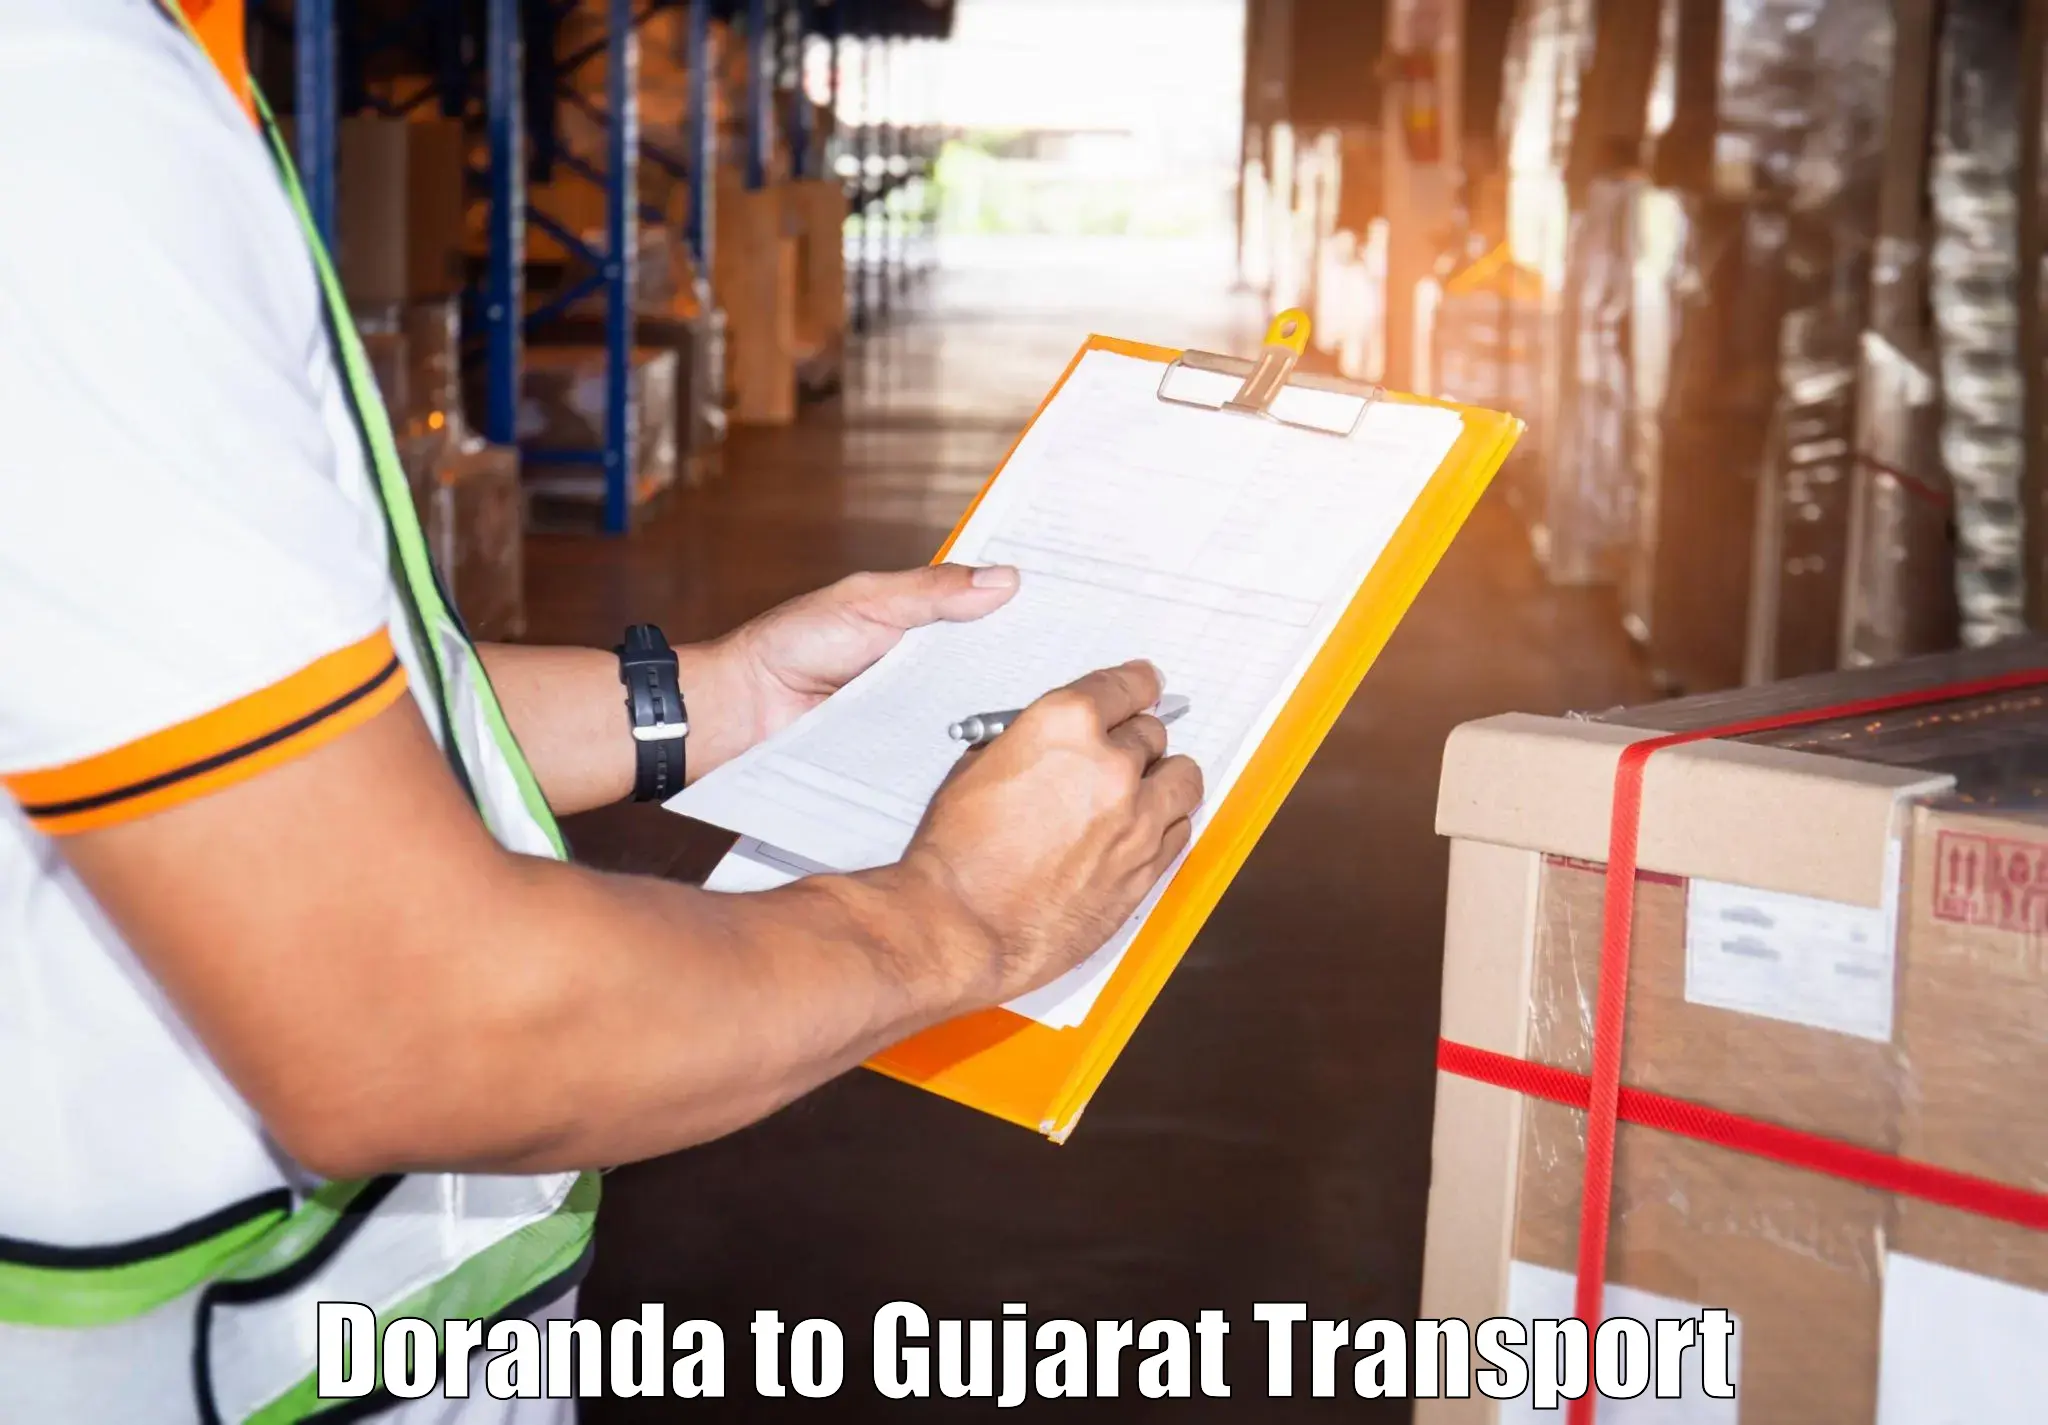 Transport in sharing Doranda to Dharampur Valsad